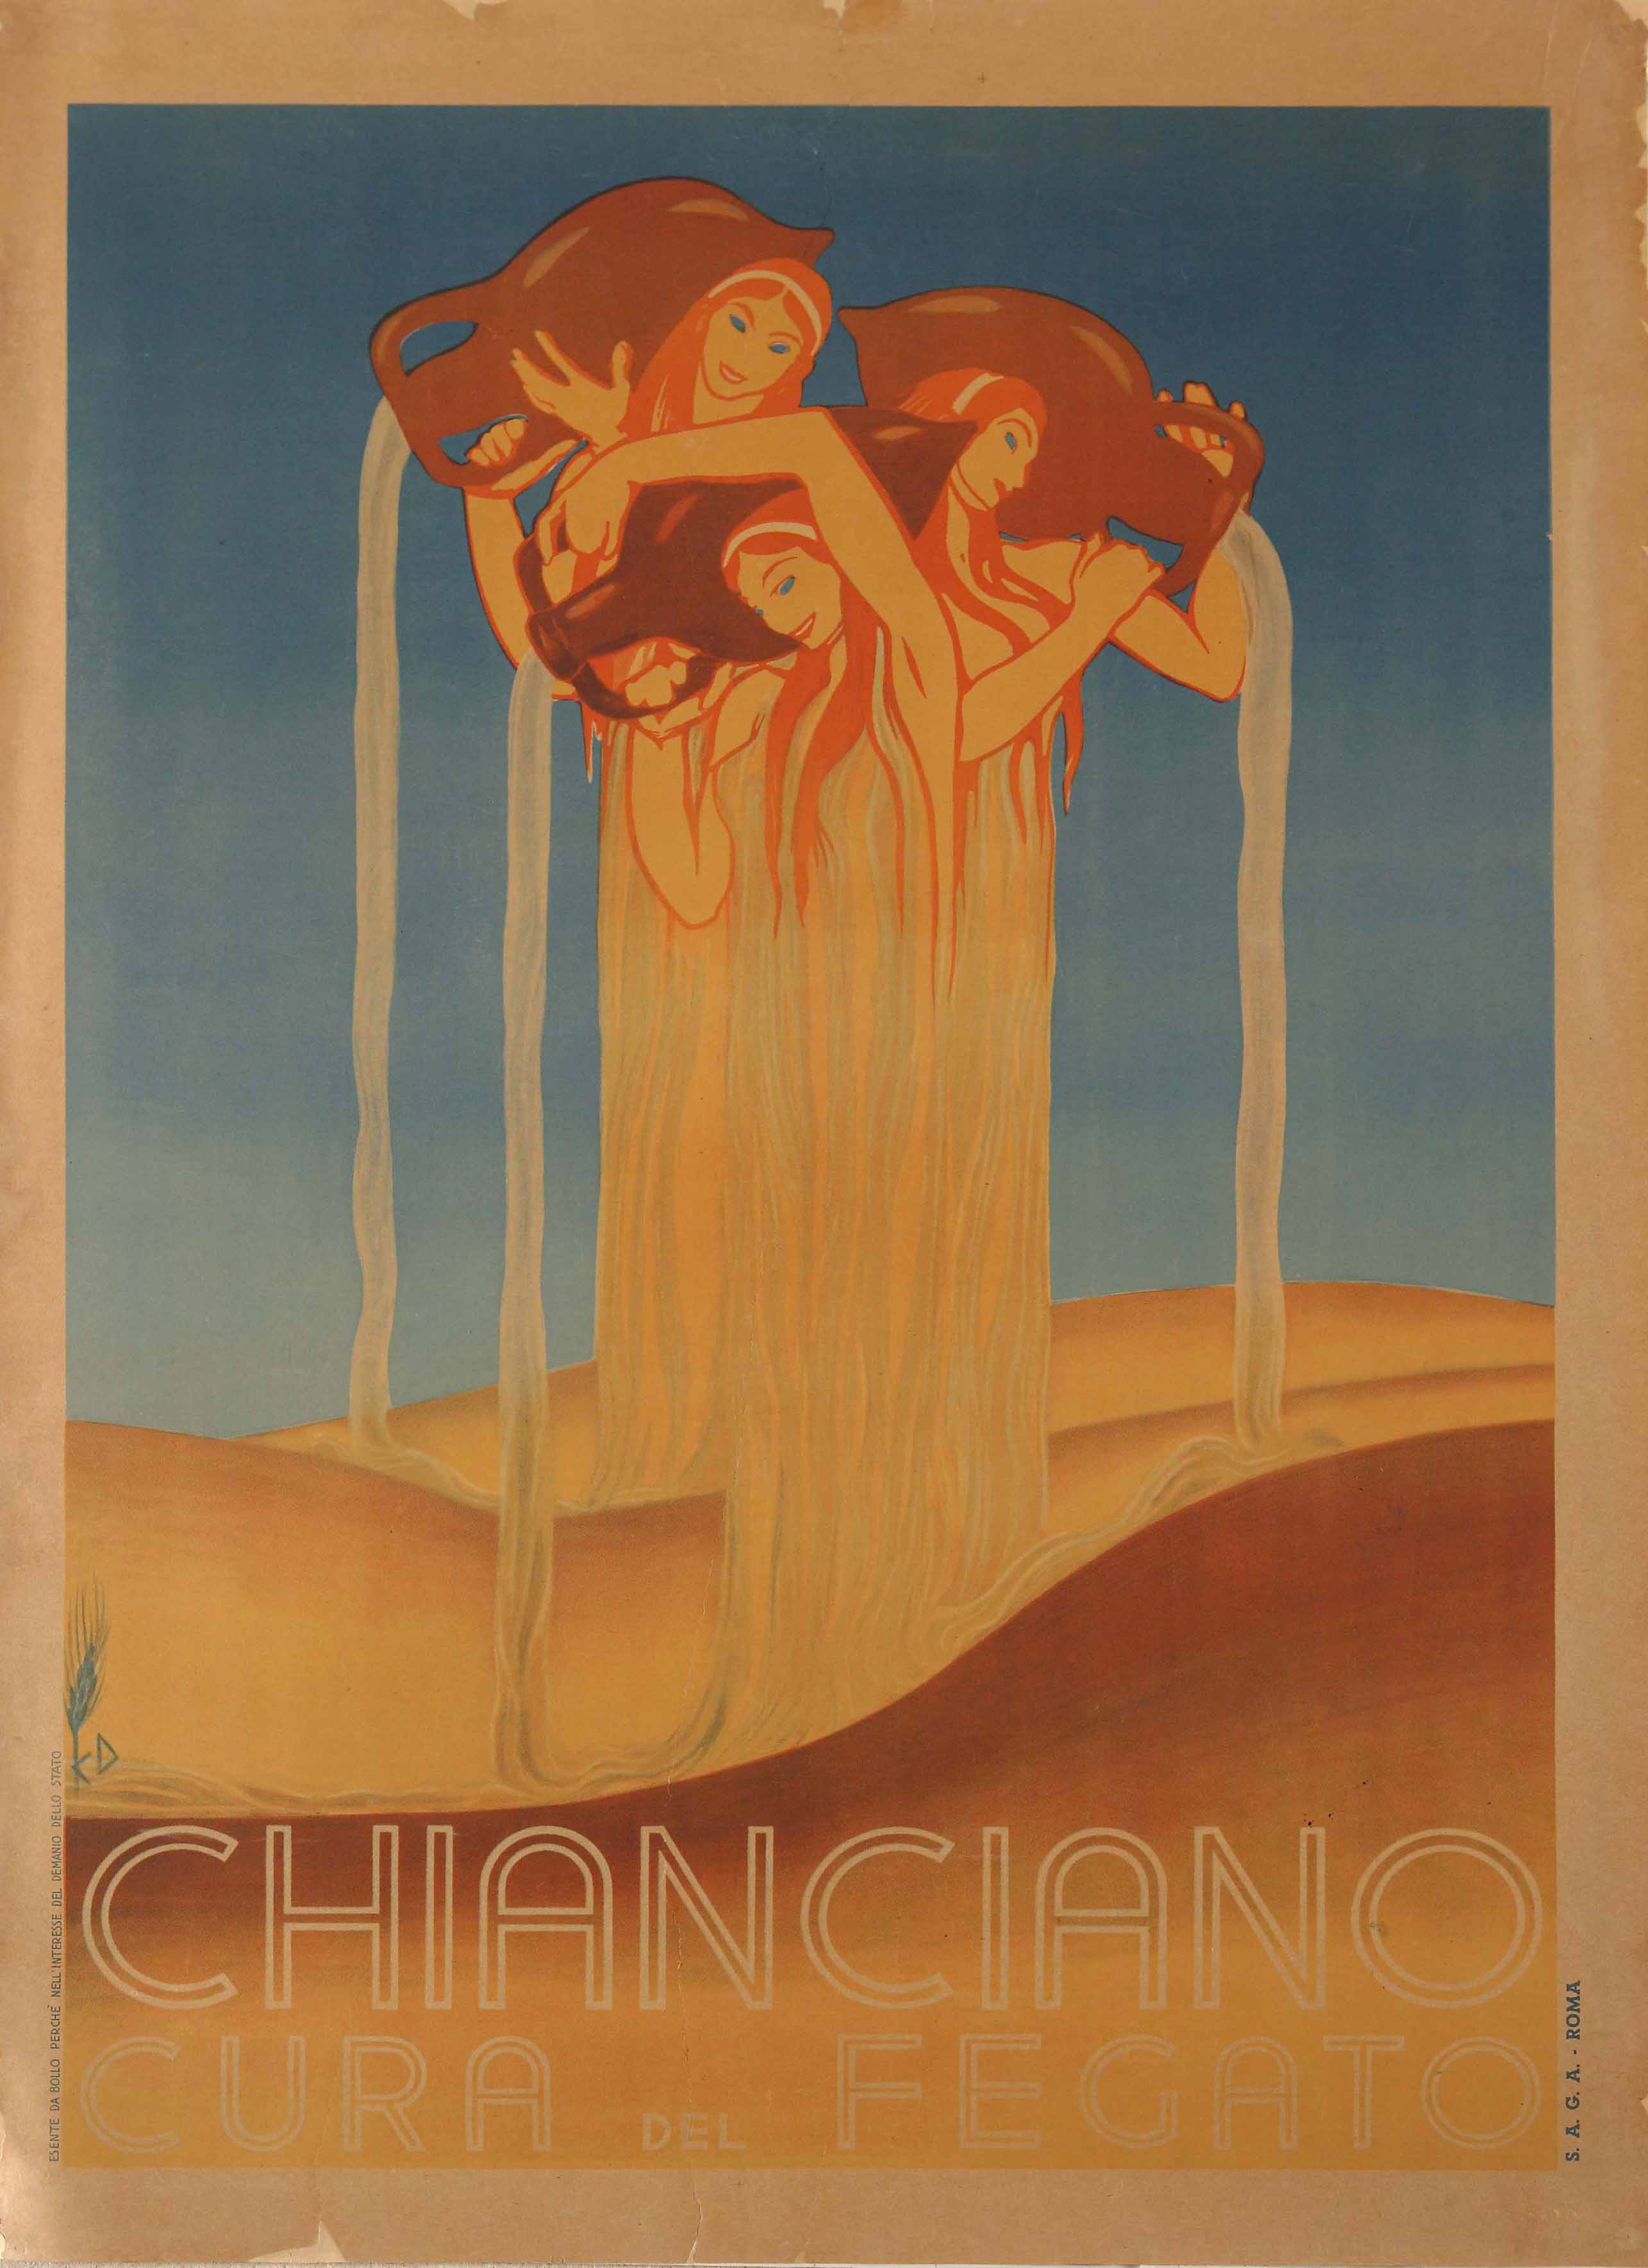 Duilio Cambellotti, Chianciano, manifesto. Galleria del Laocoonte